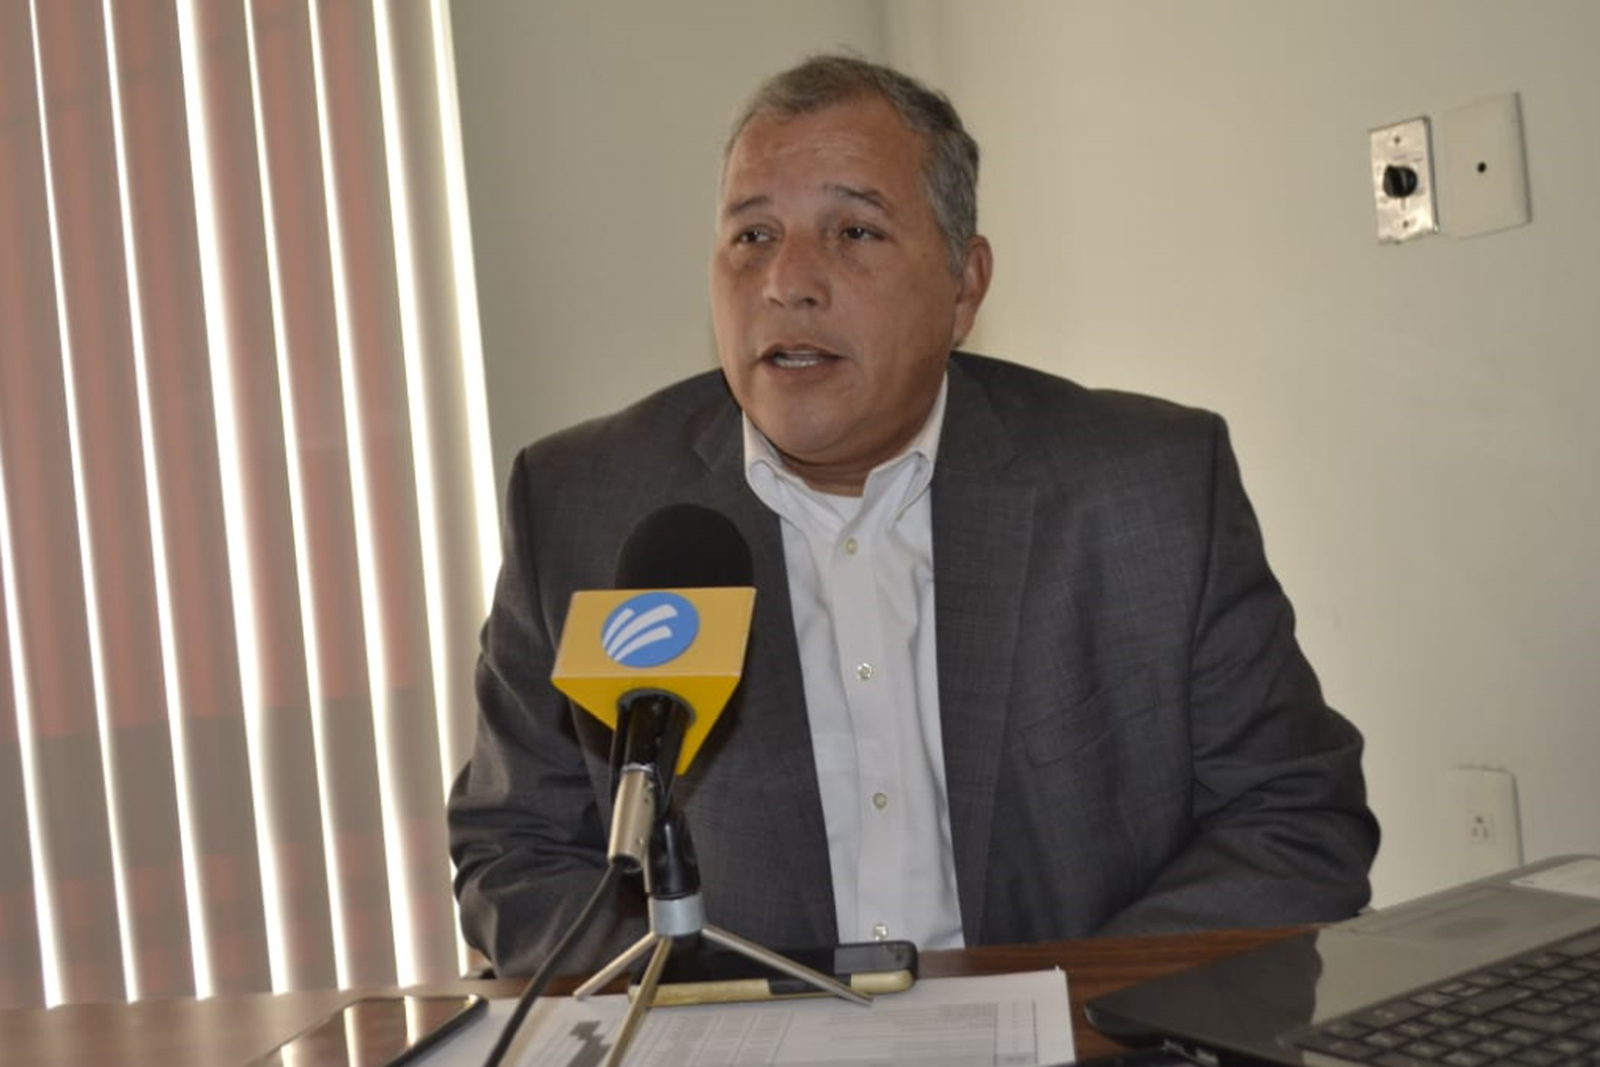 El consejero presidente, Víctor Quiroz, dijo que esperarán a conocer el presupuesto que se asigne para que al acercarse el proceso electoral, puedan contar con el personal adecuado. (ARCHIVO)